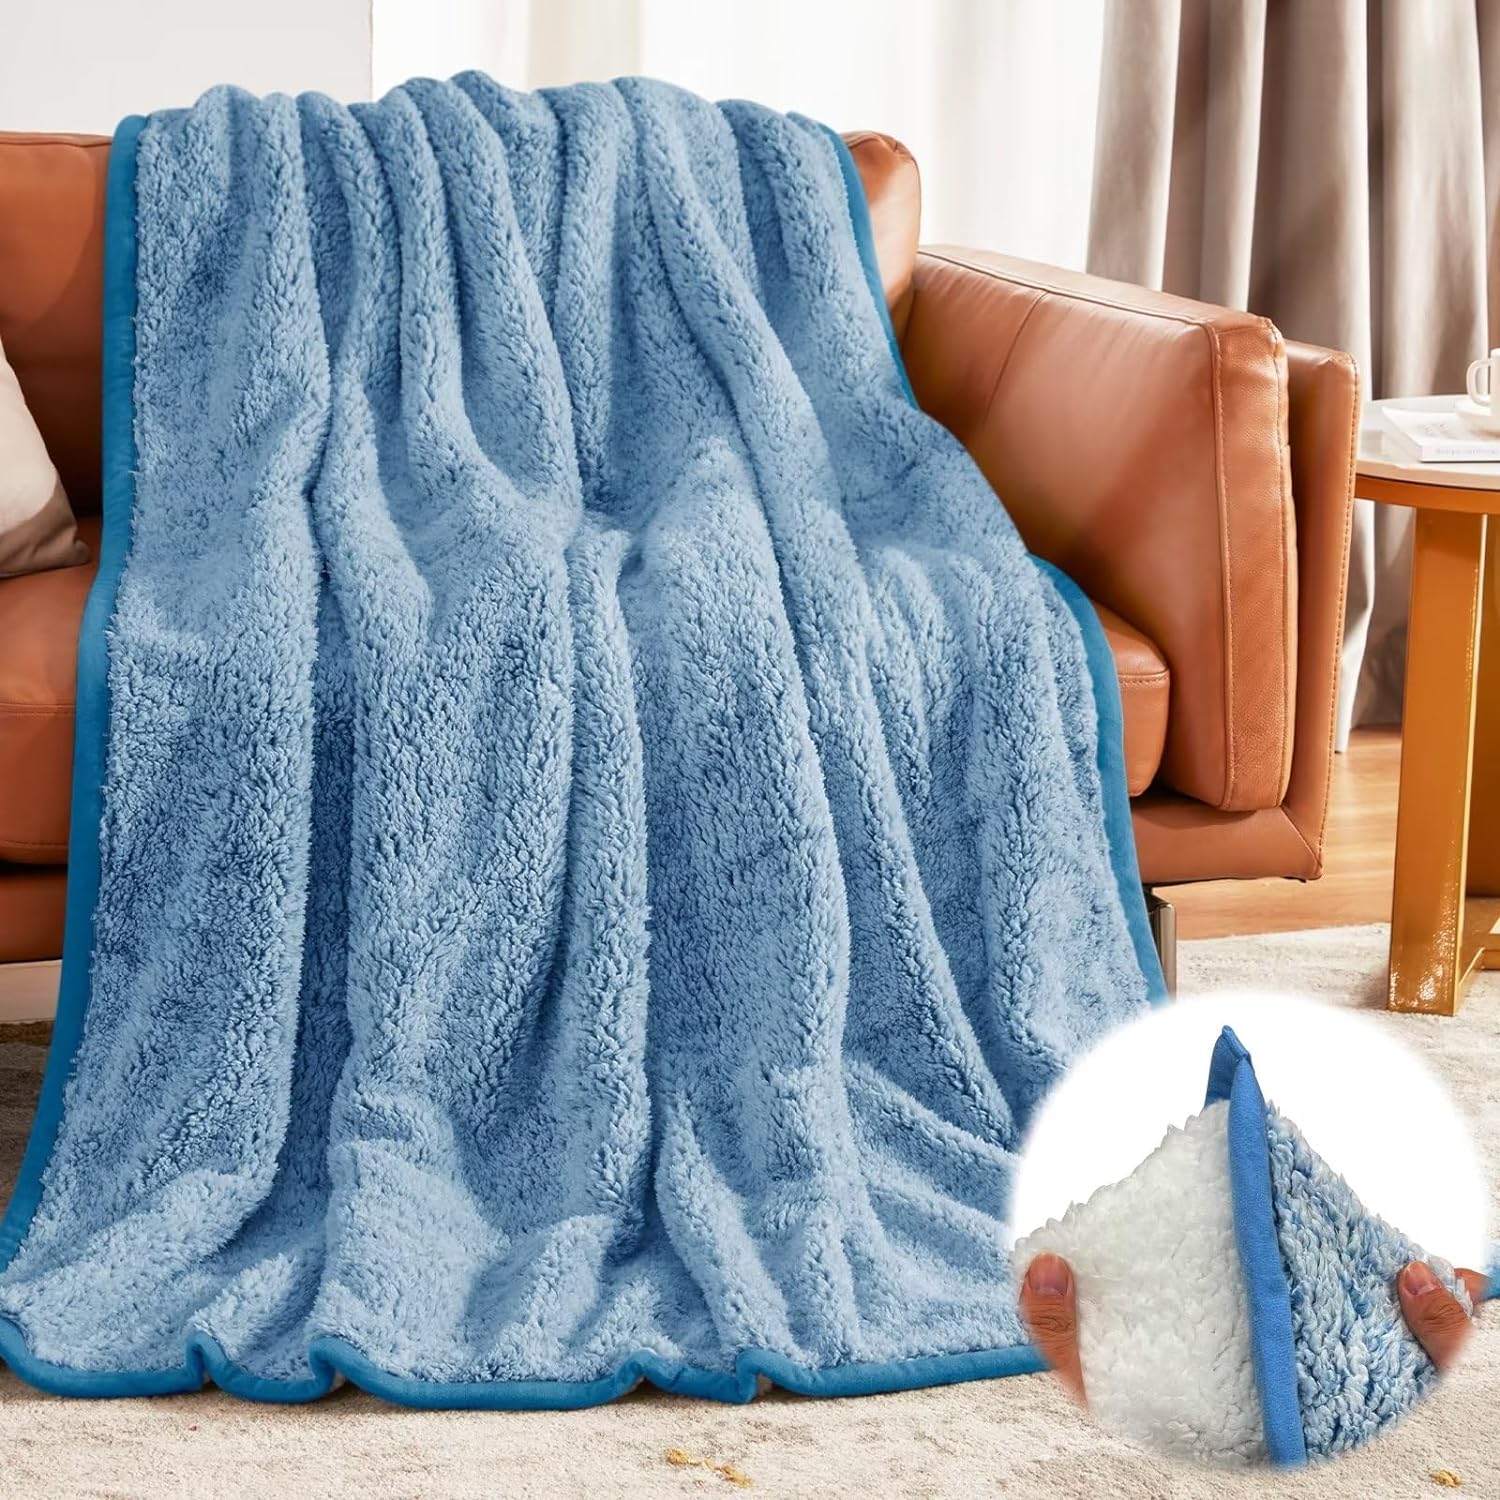  WDhomLT Manta de forro polar de franela para la siesta de  oficina, manta de forro polar coral acanalado, mantas gruesas y mantas para  sofá, cama deliciosamente cálida y acogedora, mantas antibolitas 